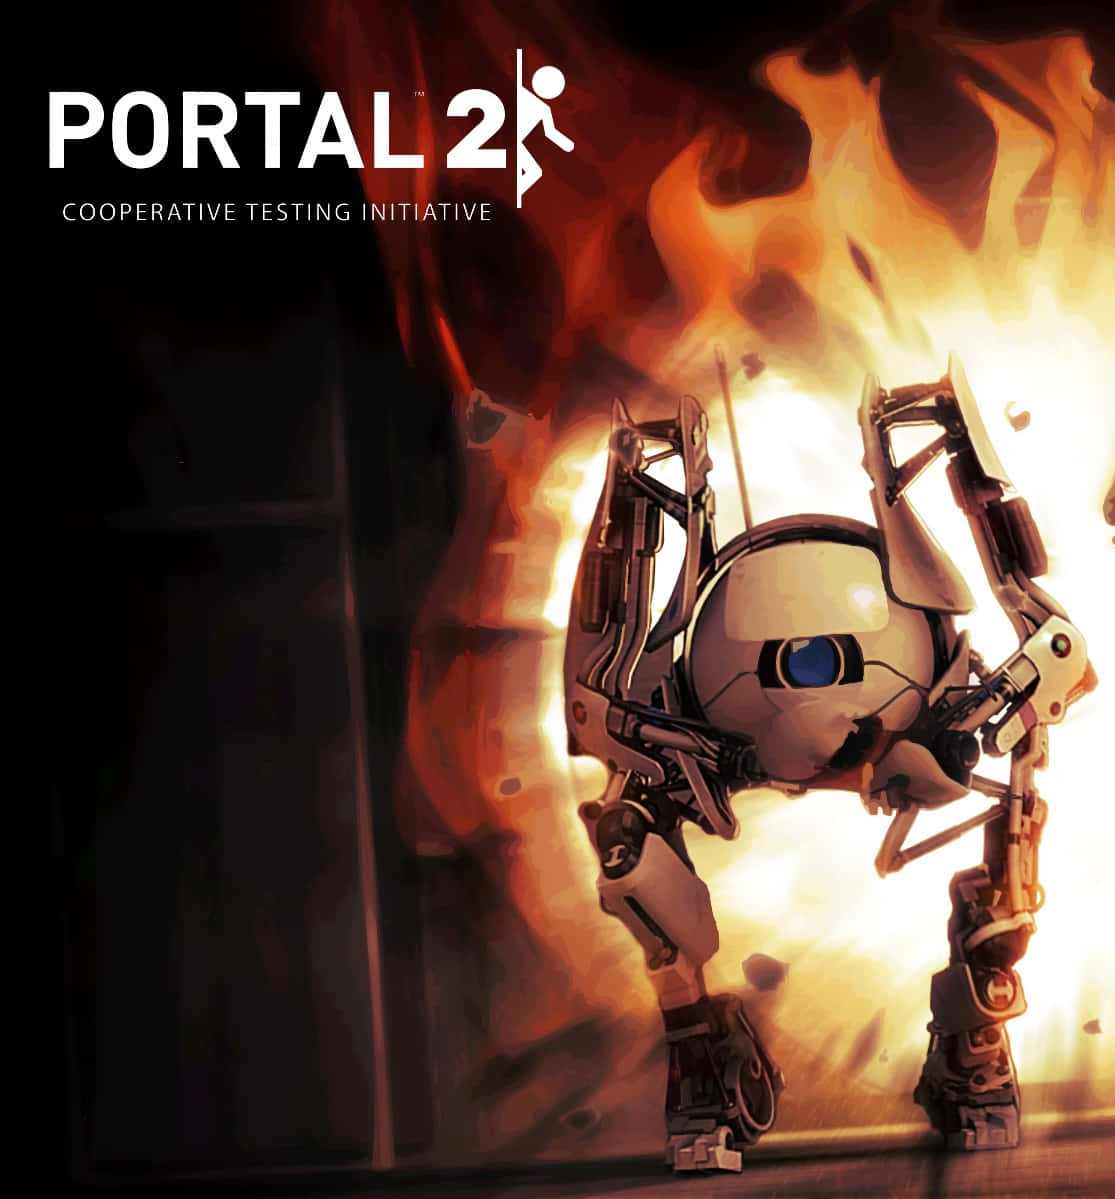 Desafiese No Pixel 3 Portal 2